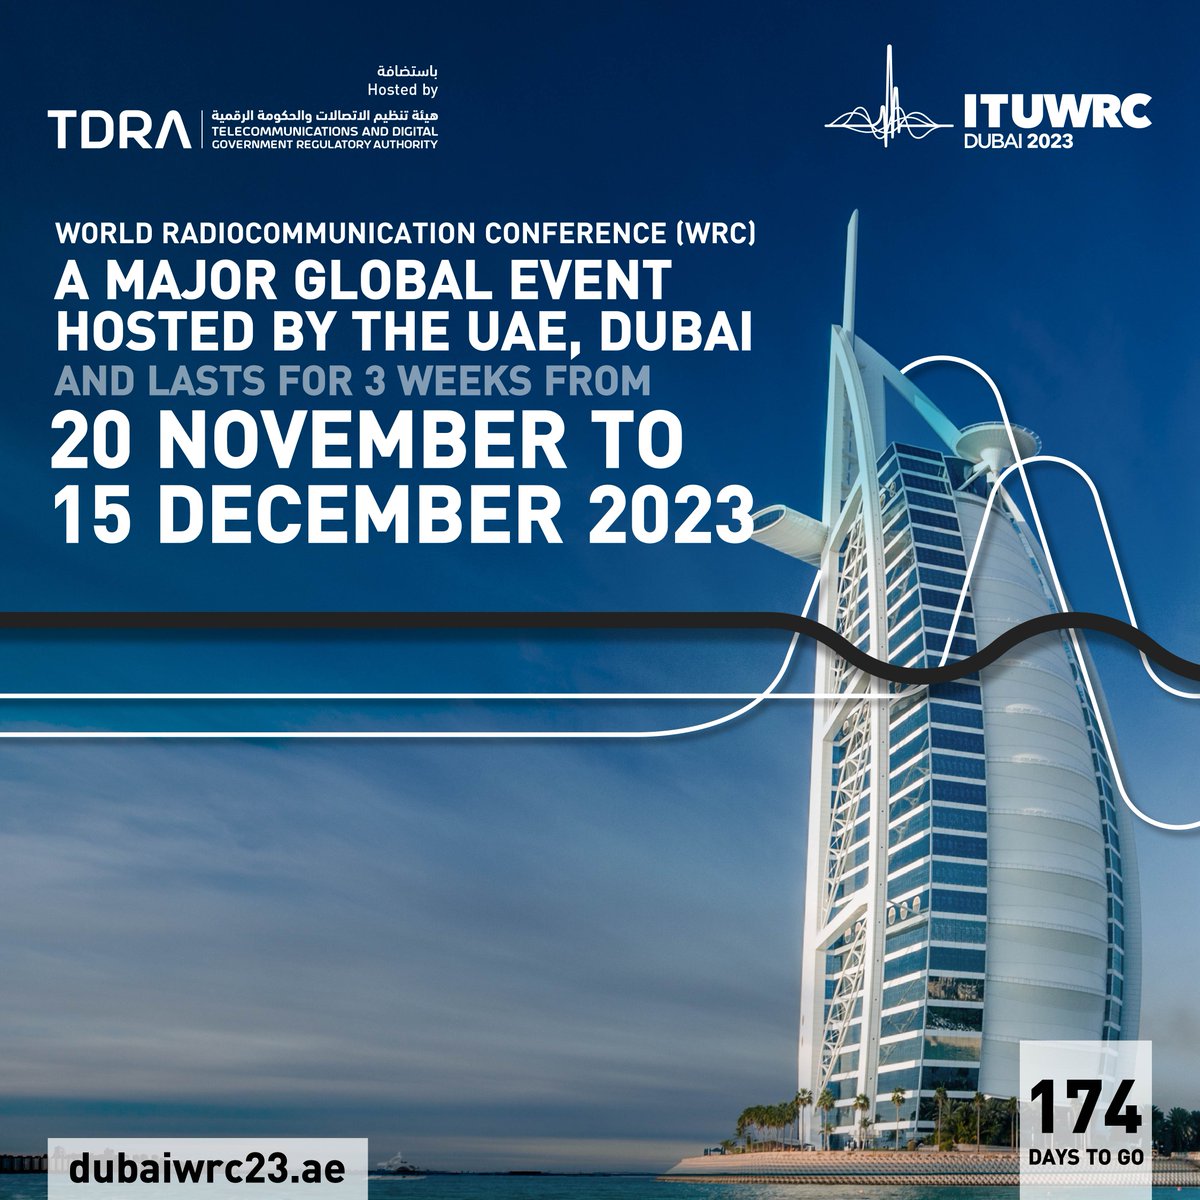 A major Global Event Hosted by the #UAE, #Dubai 

@ITU 
#itu
#tdrauae
#ituwrc

dubaiwrc23.ae